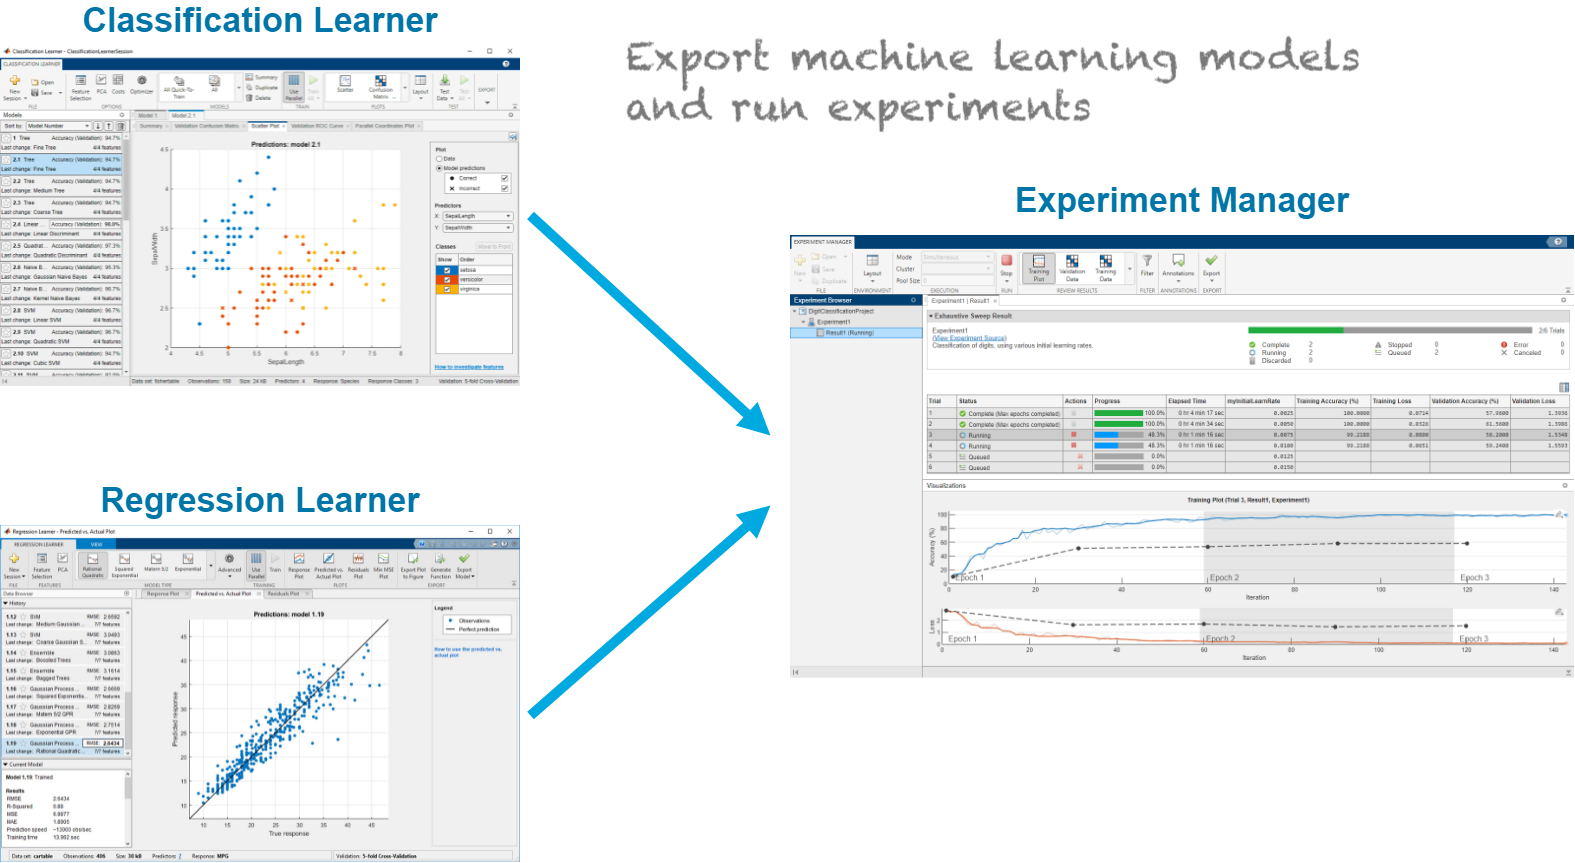 出口机器学习模型的分类学习者和回归学习者应用到实验管理器应用程序,并运行实验导出的机器学习模型